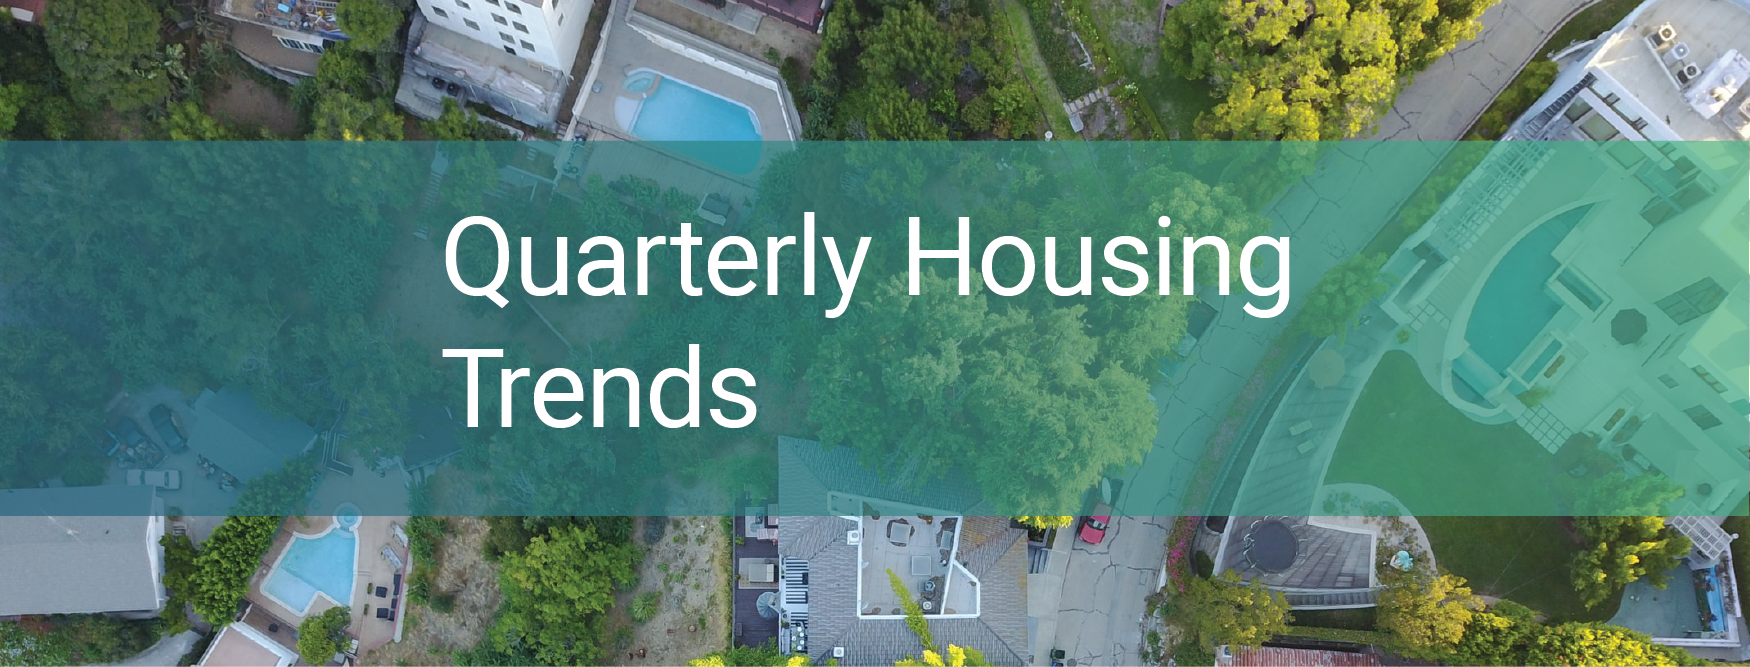 Housing Quarterly Trends